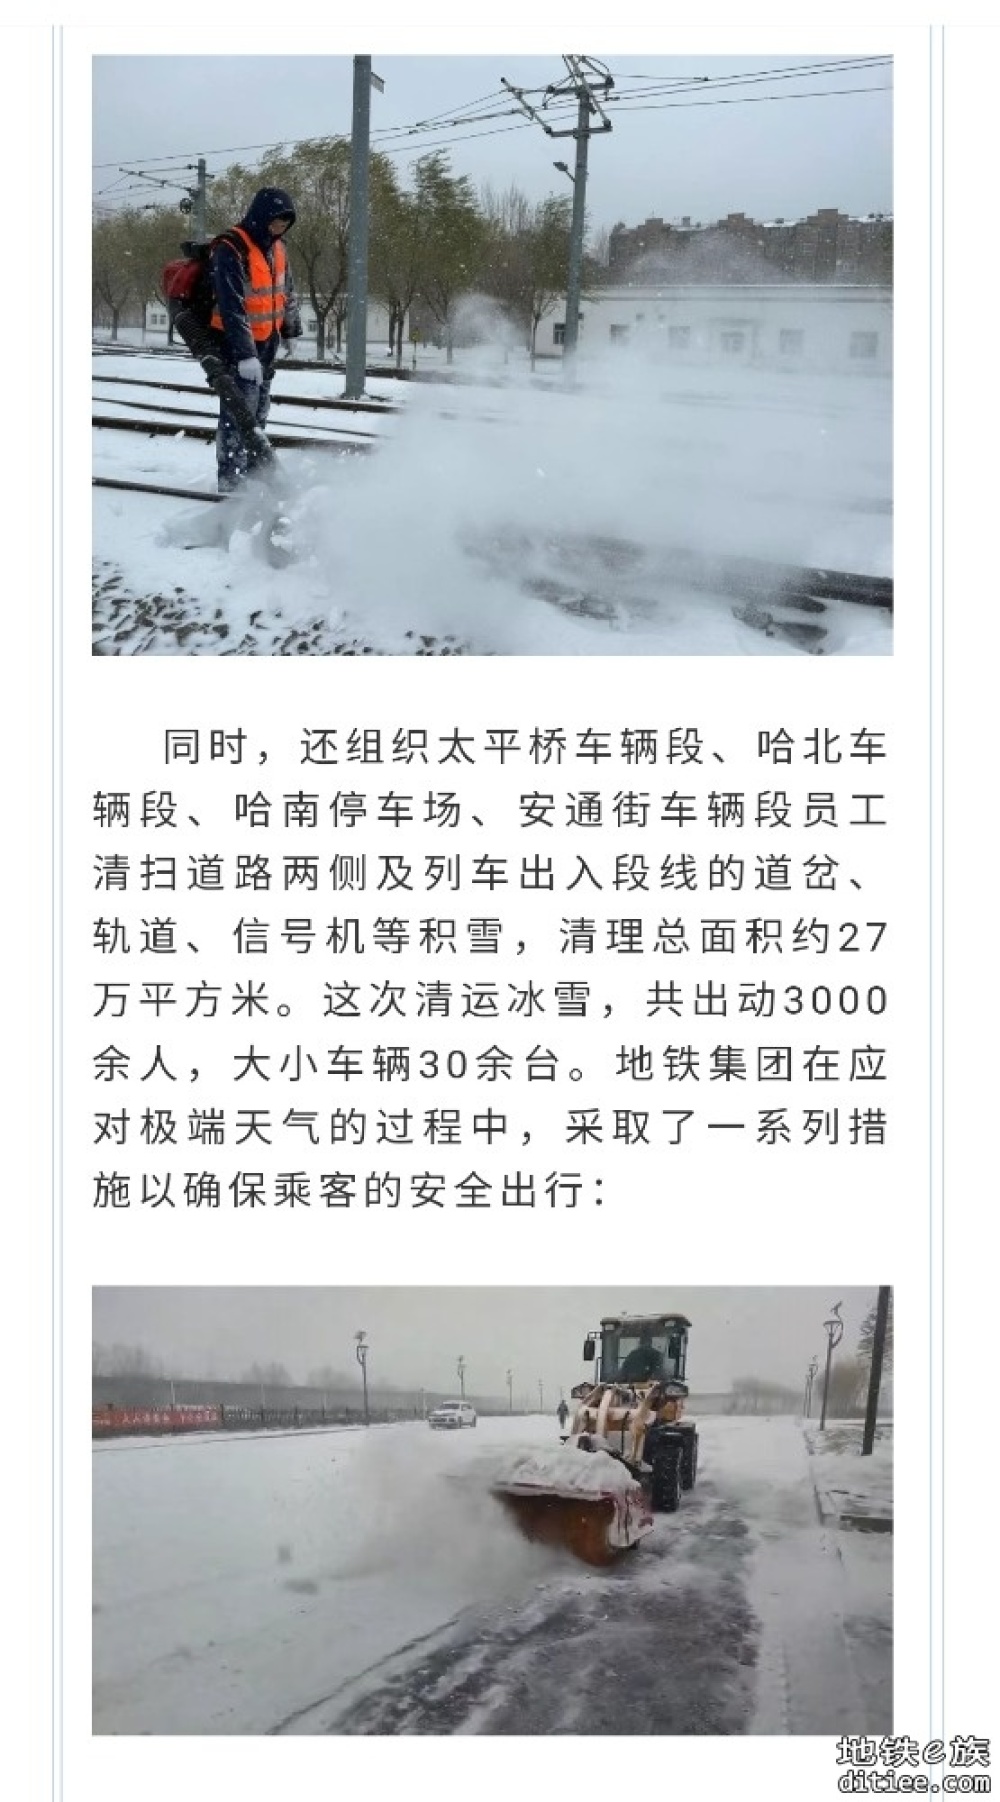 哈尔滨地铁集团全力组织线网清运冰雪保运营